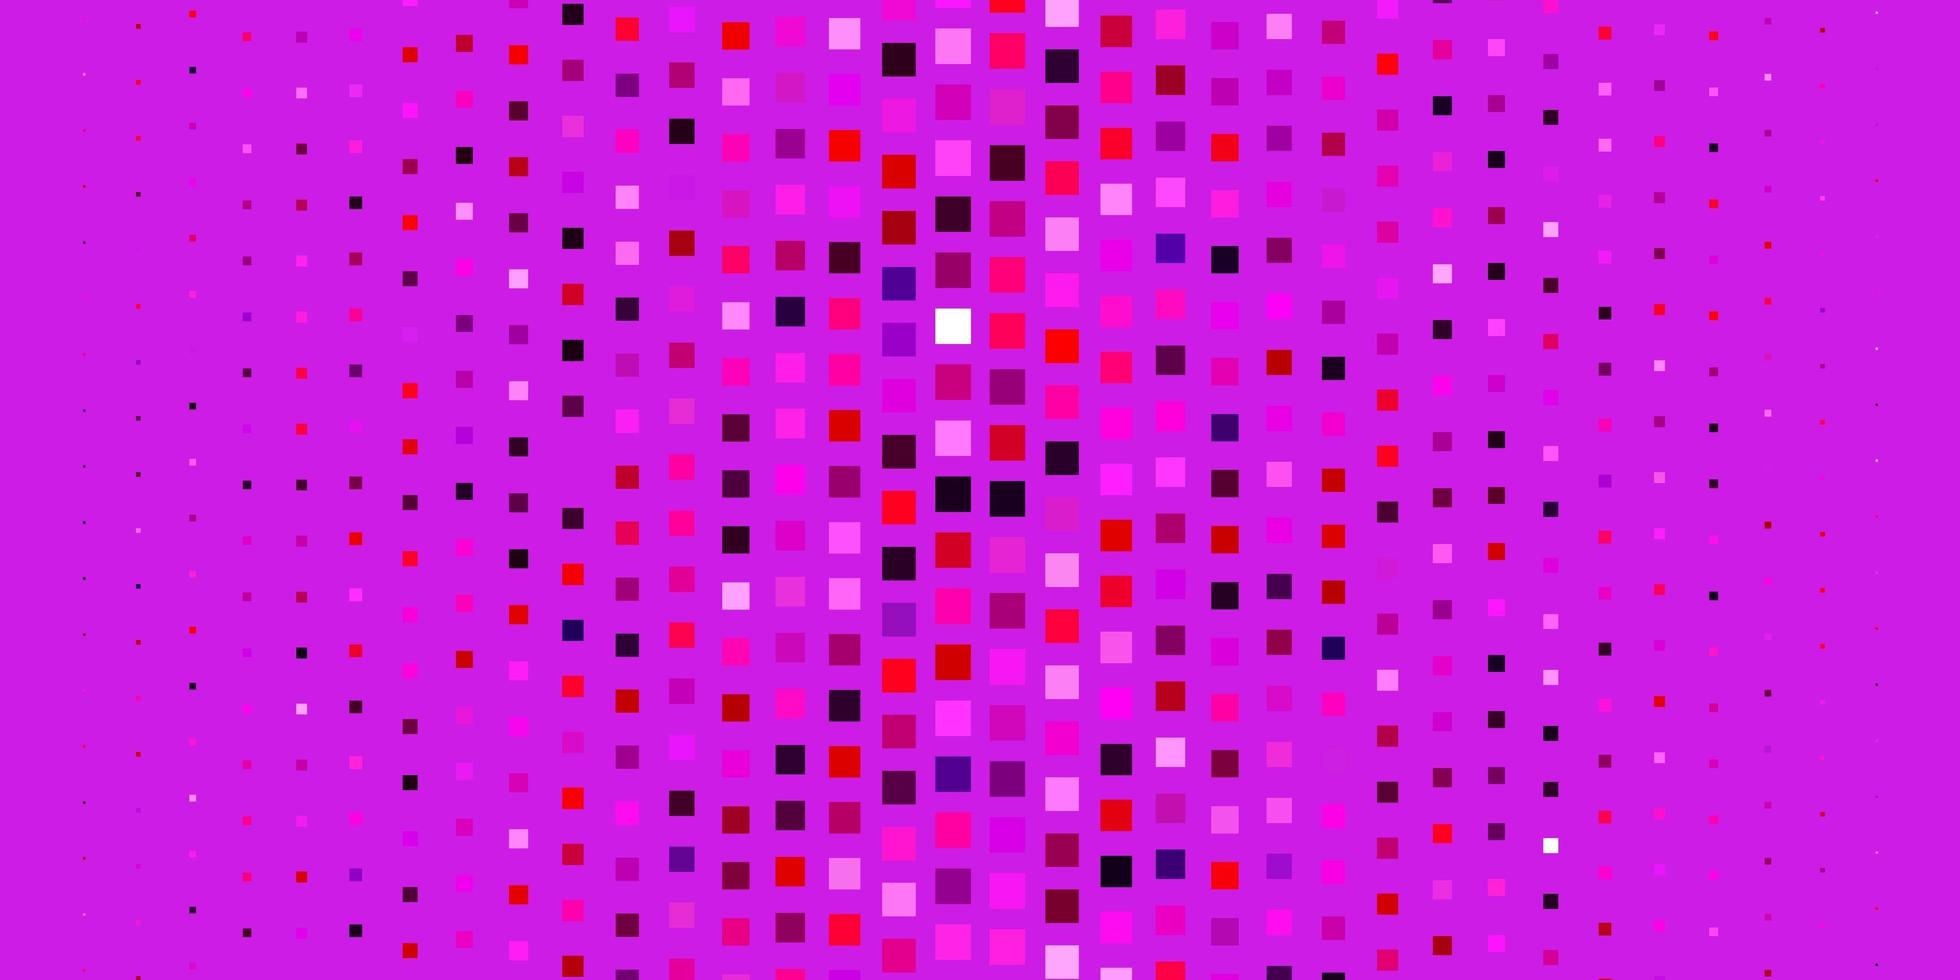 Fondo de vector violeta, rosa claro con rectángulos. Ilustración de degradado abstracto con rectángulos de colores. mejor diseño para su anuncio, cartel, banner.